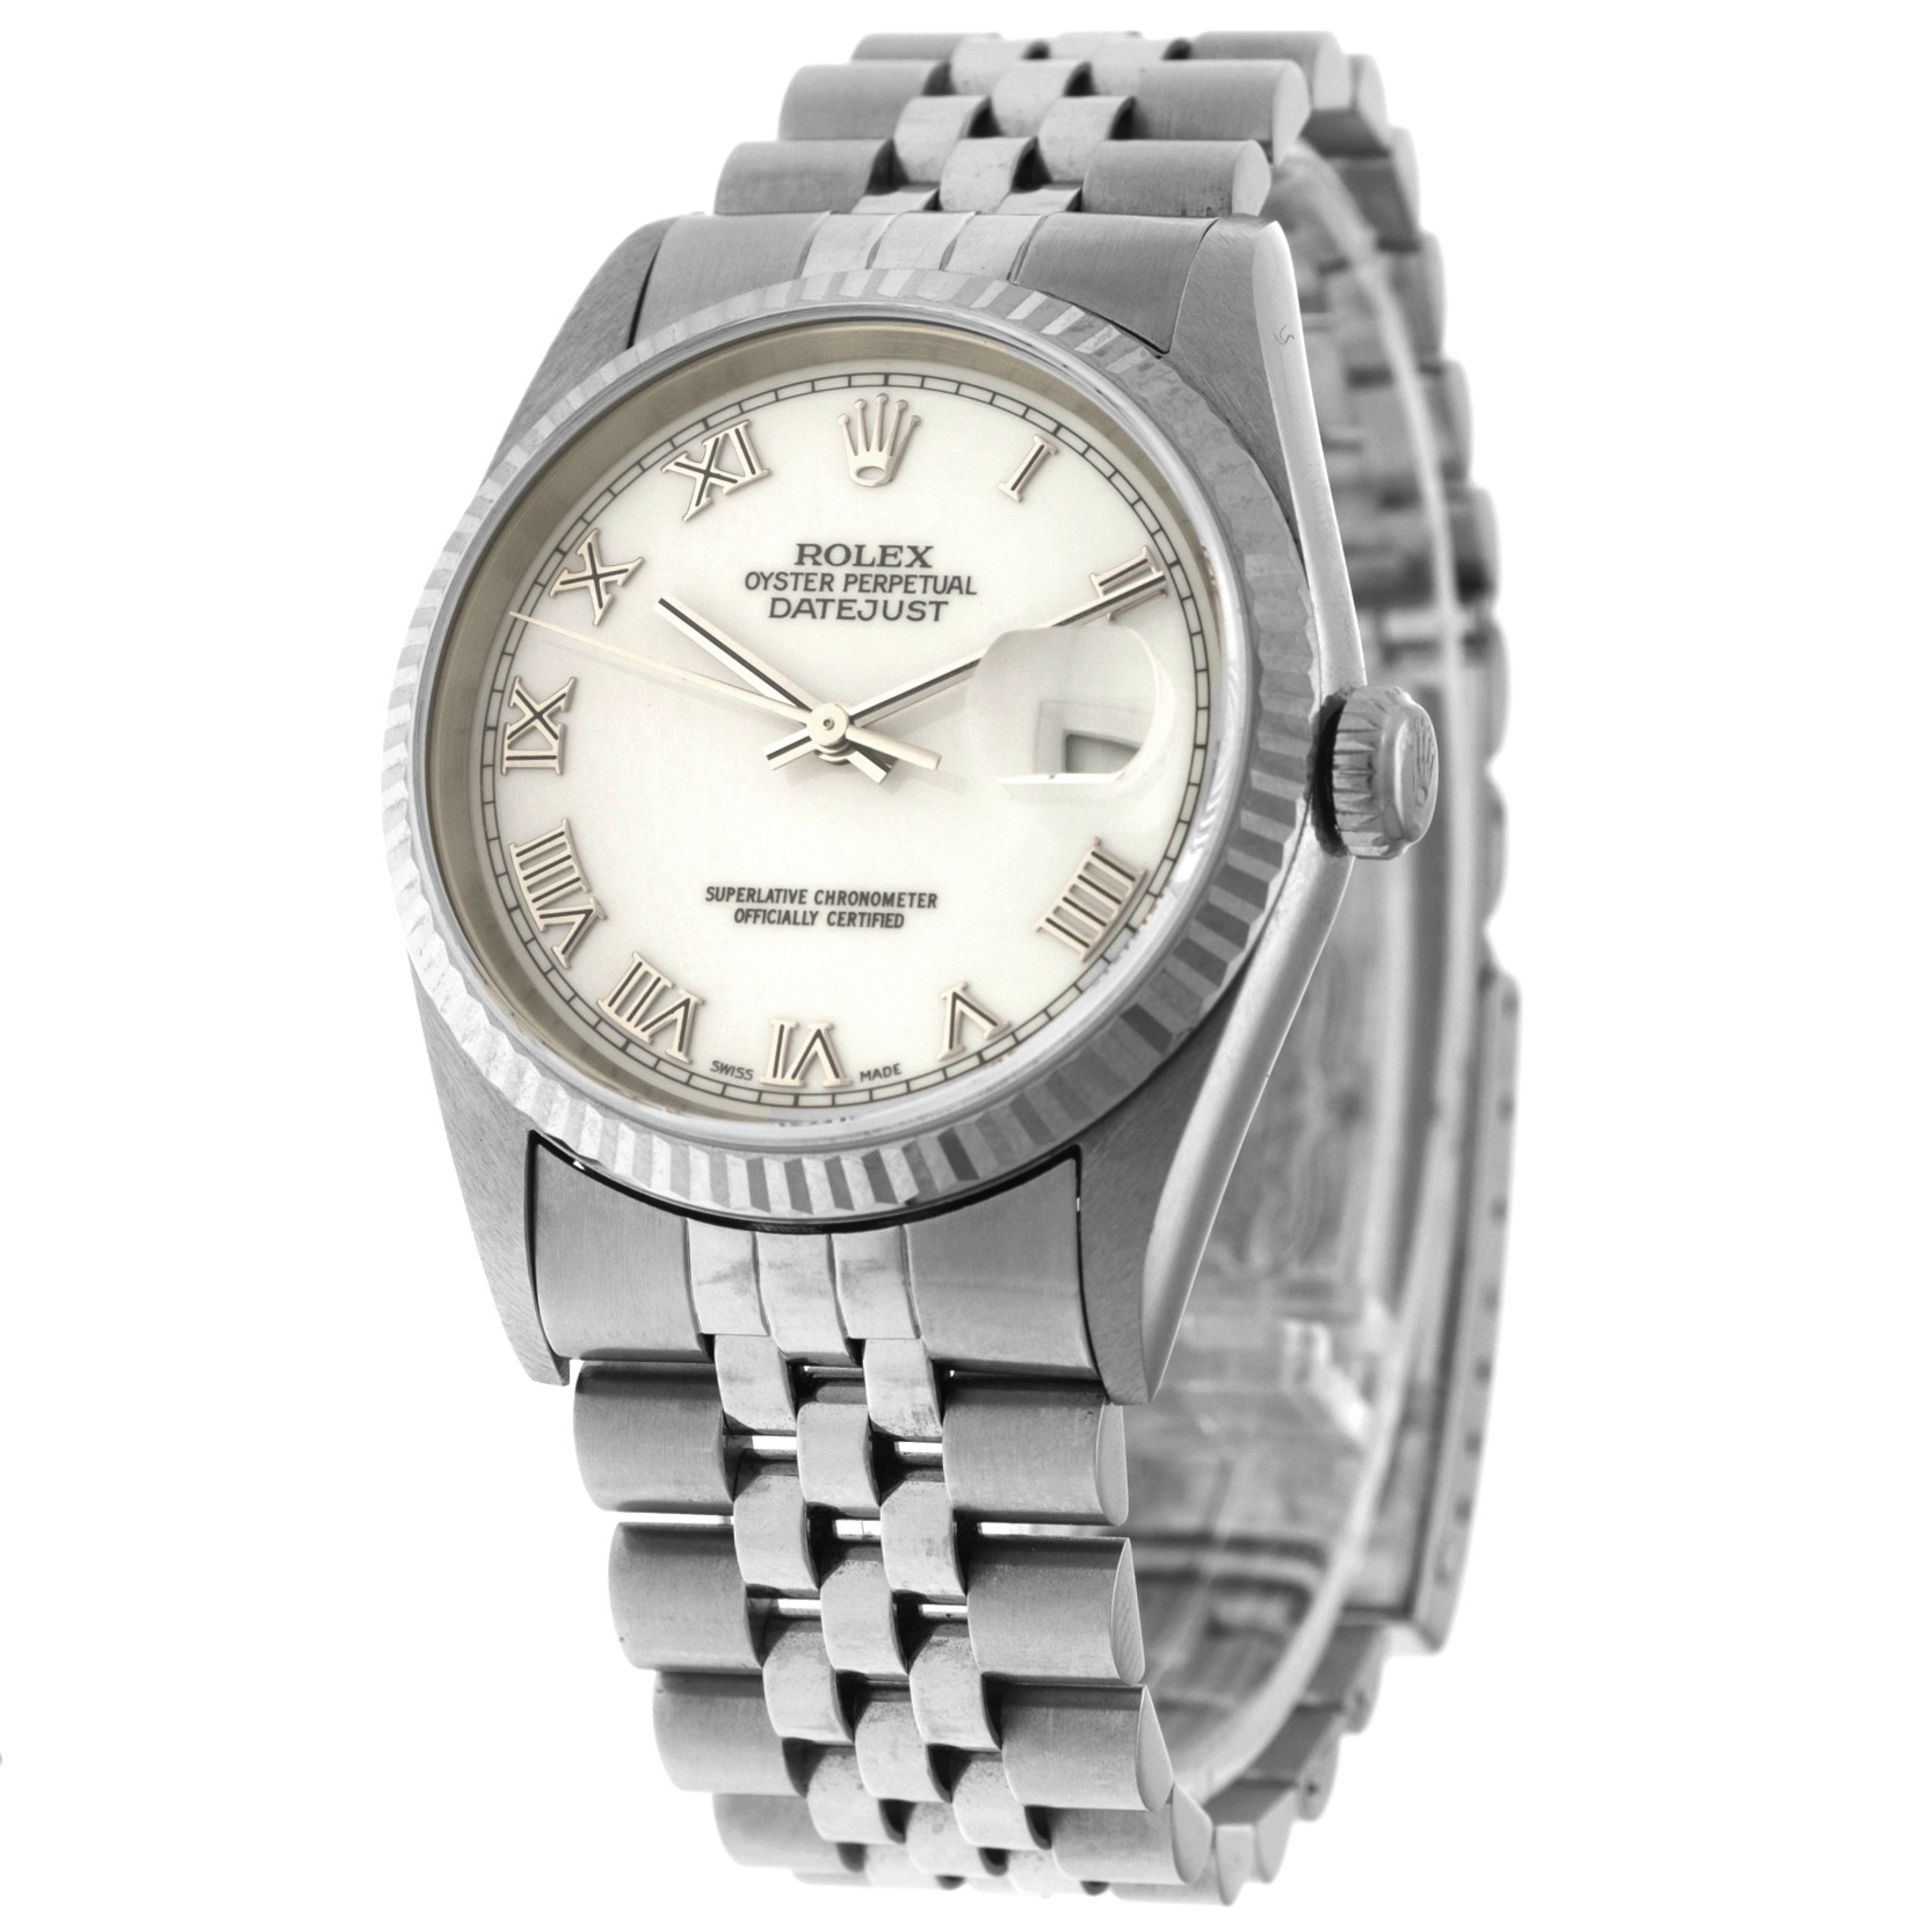 No Reserve - Rolex Datejust 36 16234 - Men's watch - approx. 1997. - Bild 2 aus 5